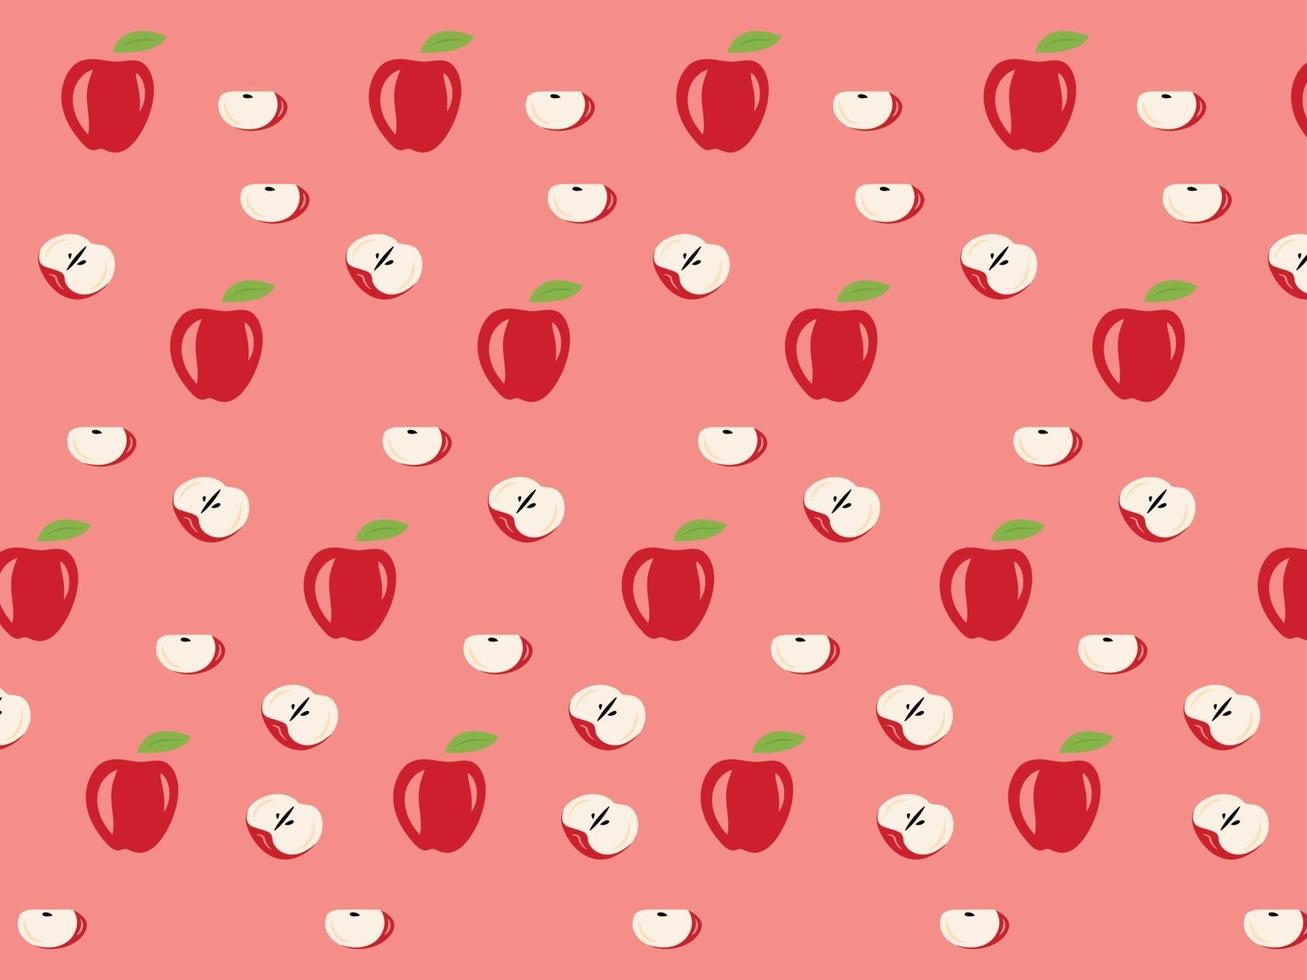 maçã padrão, maçã, design de maçã, design simples de maçã vetor